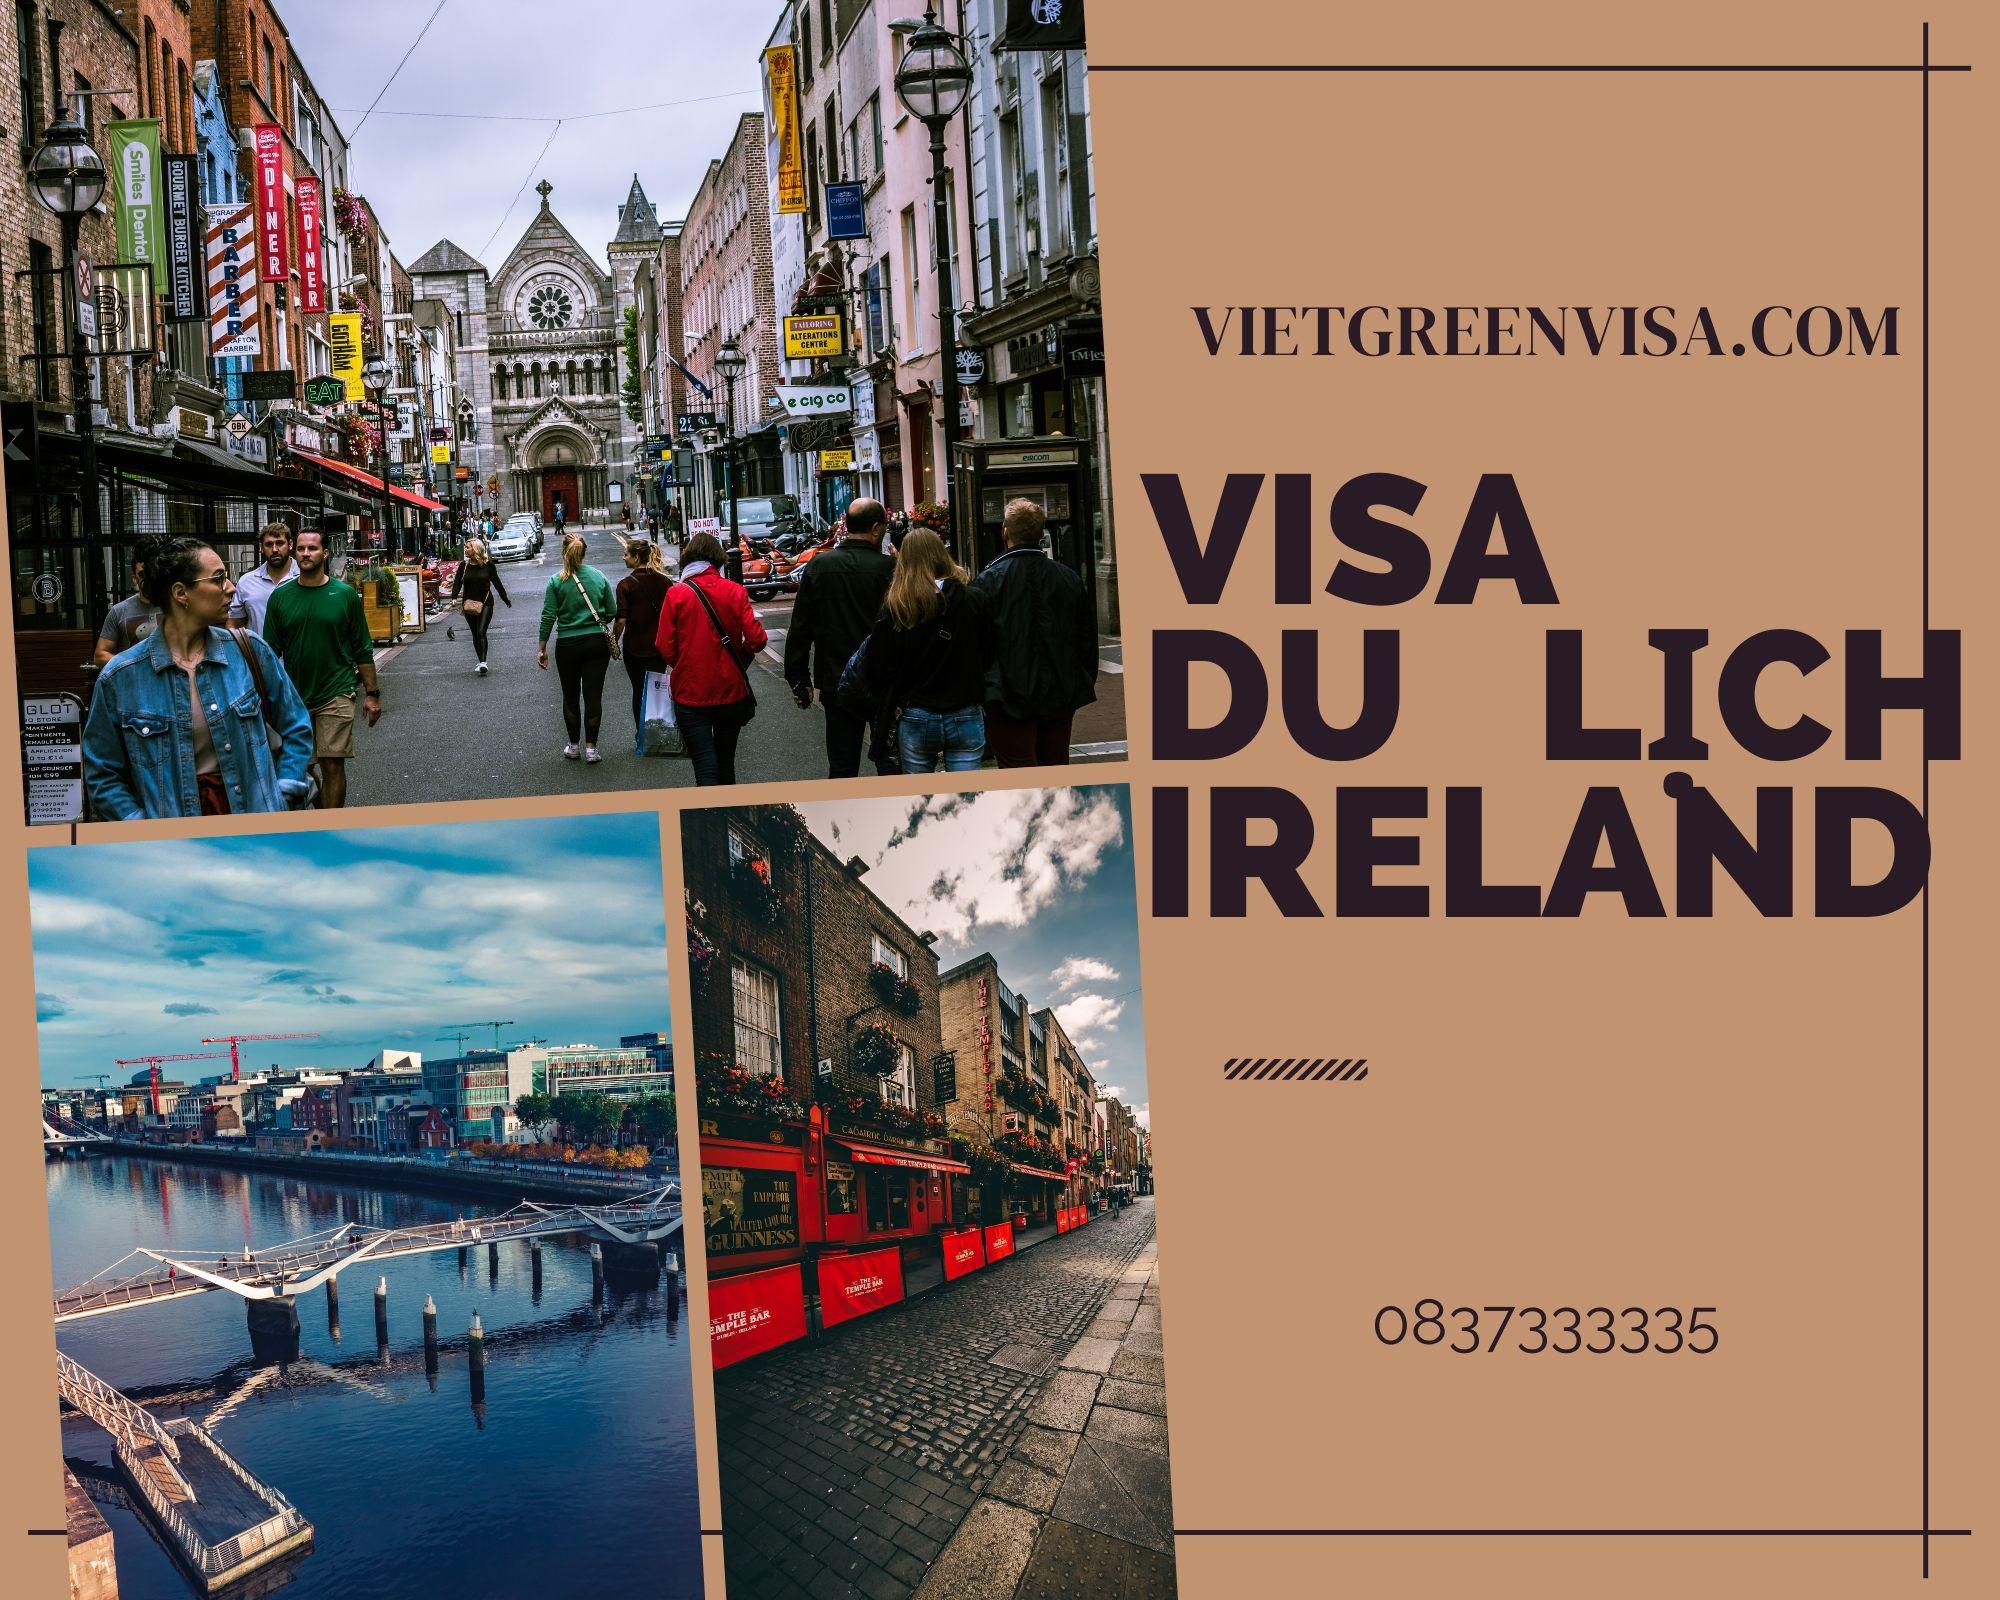 Dịch vụ hỗ trợ xin visa du lịch Ireland giá tốt nhất